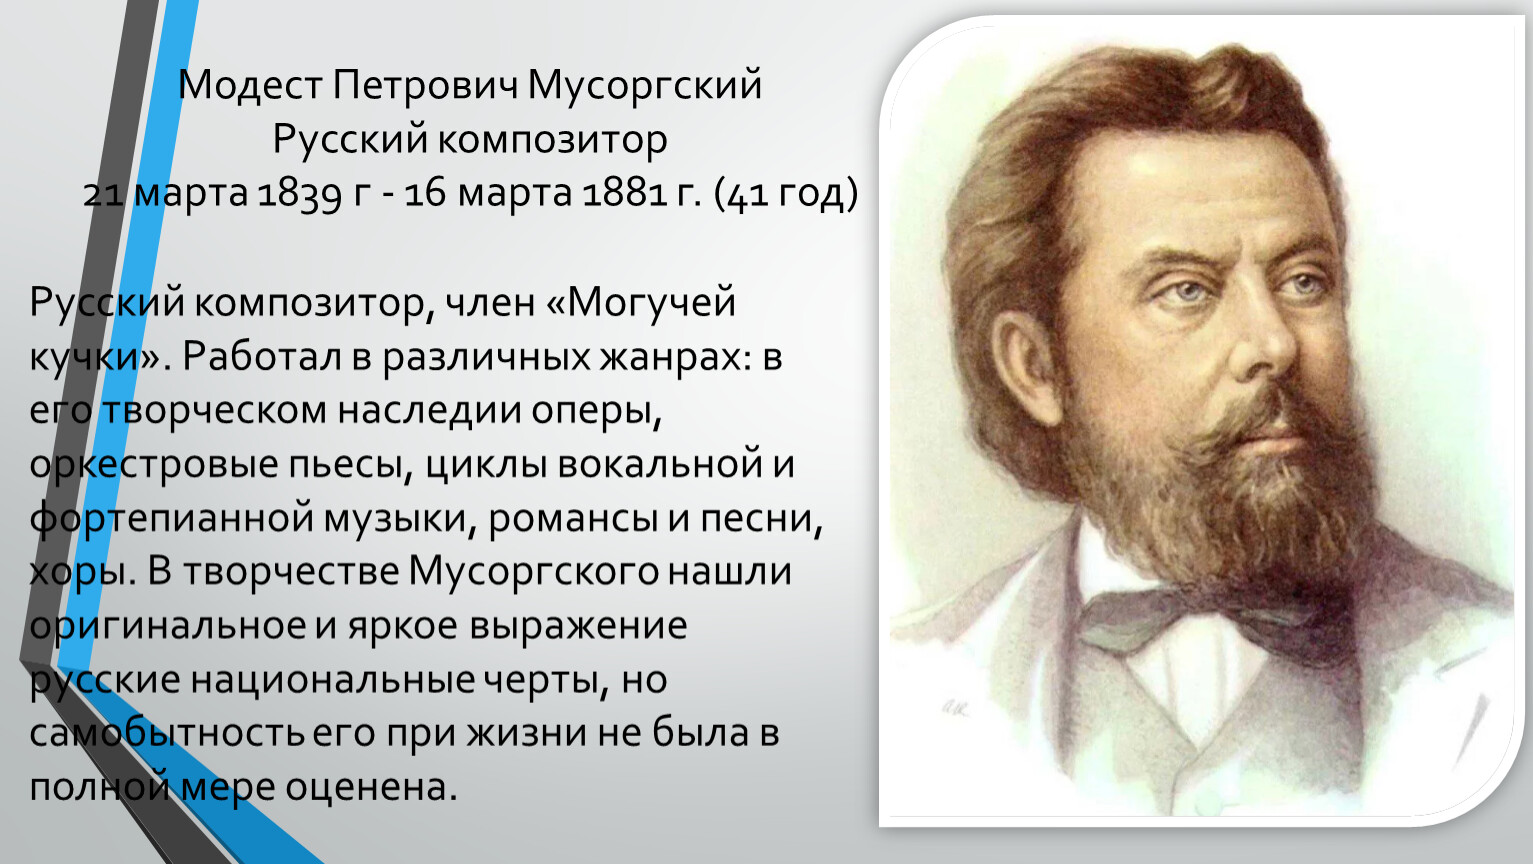 1839 Модест Мусоргский, русский композитор, участник 